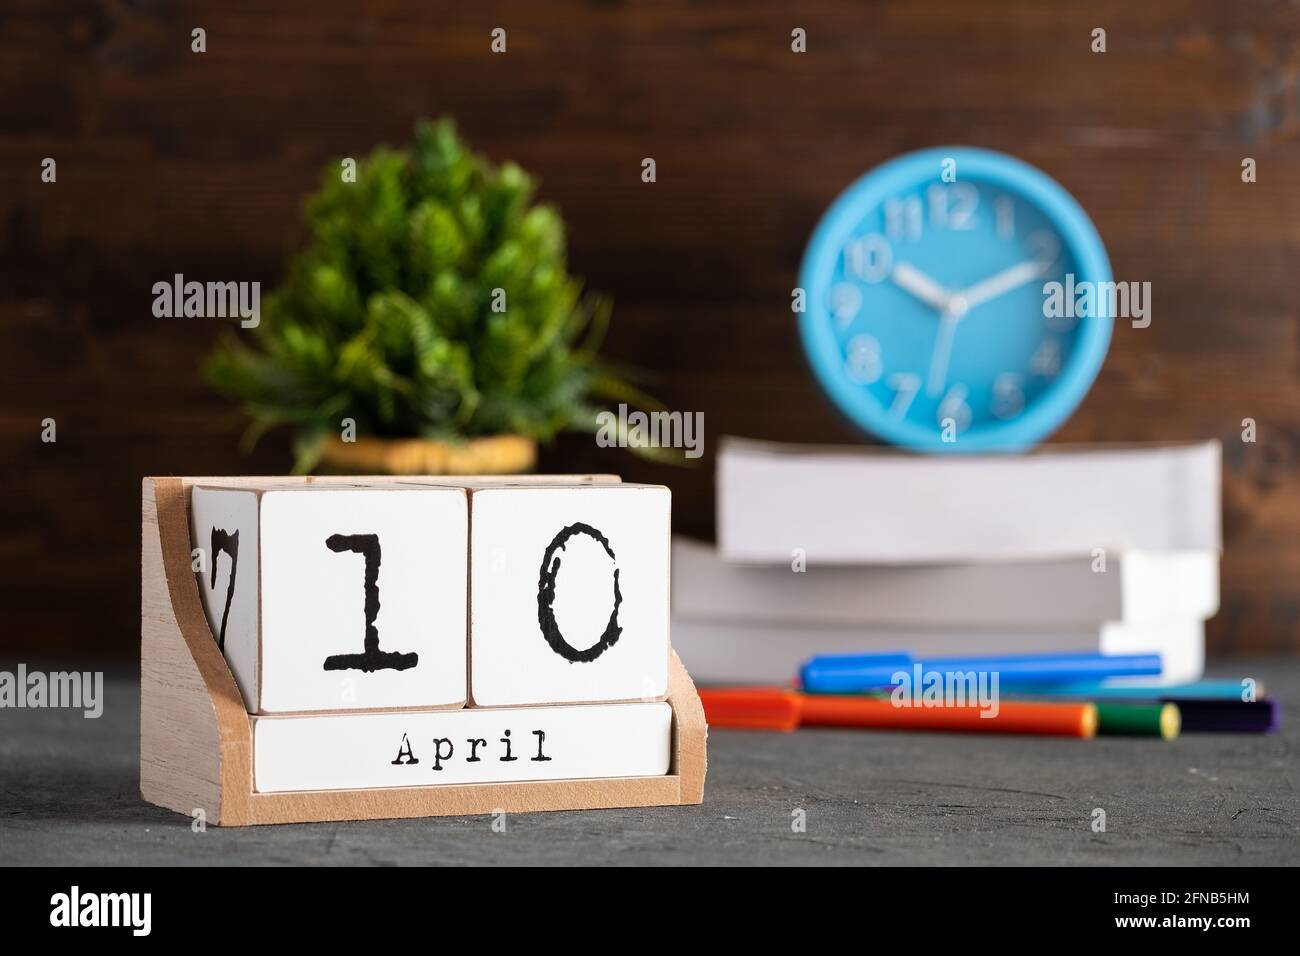 10 avril. Avril 10 calendrier cube en bois avec objets flous sur fond. Banque D'Images